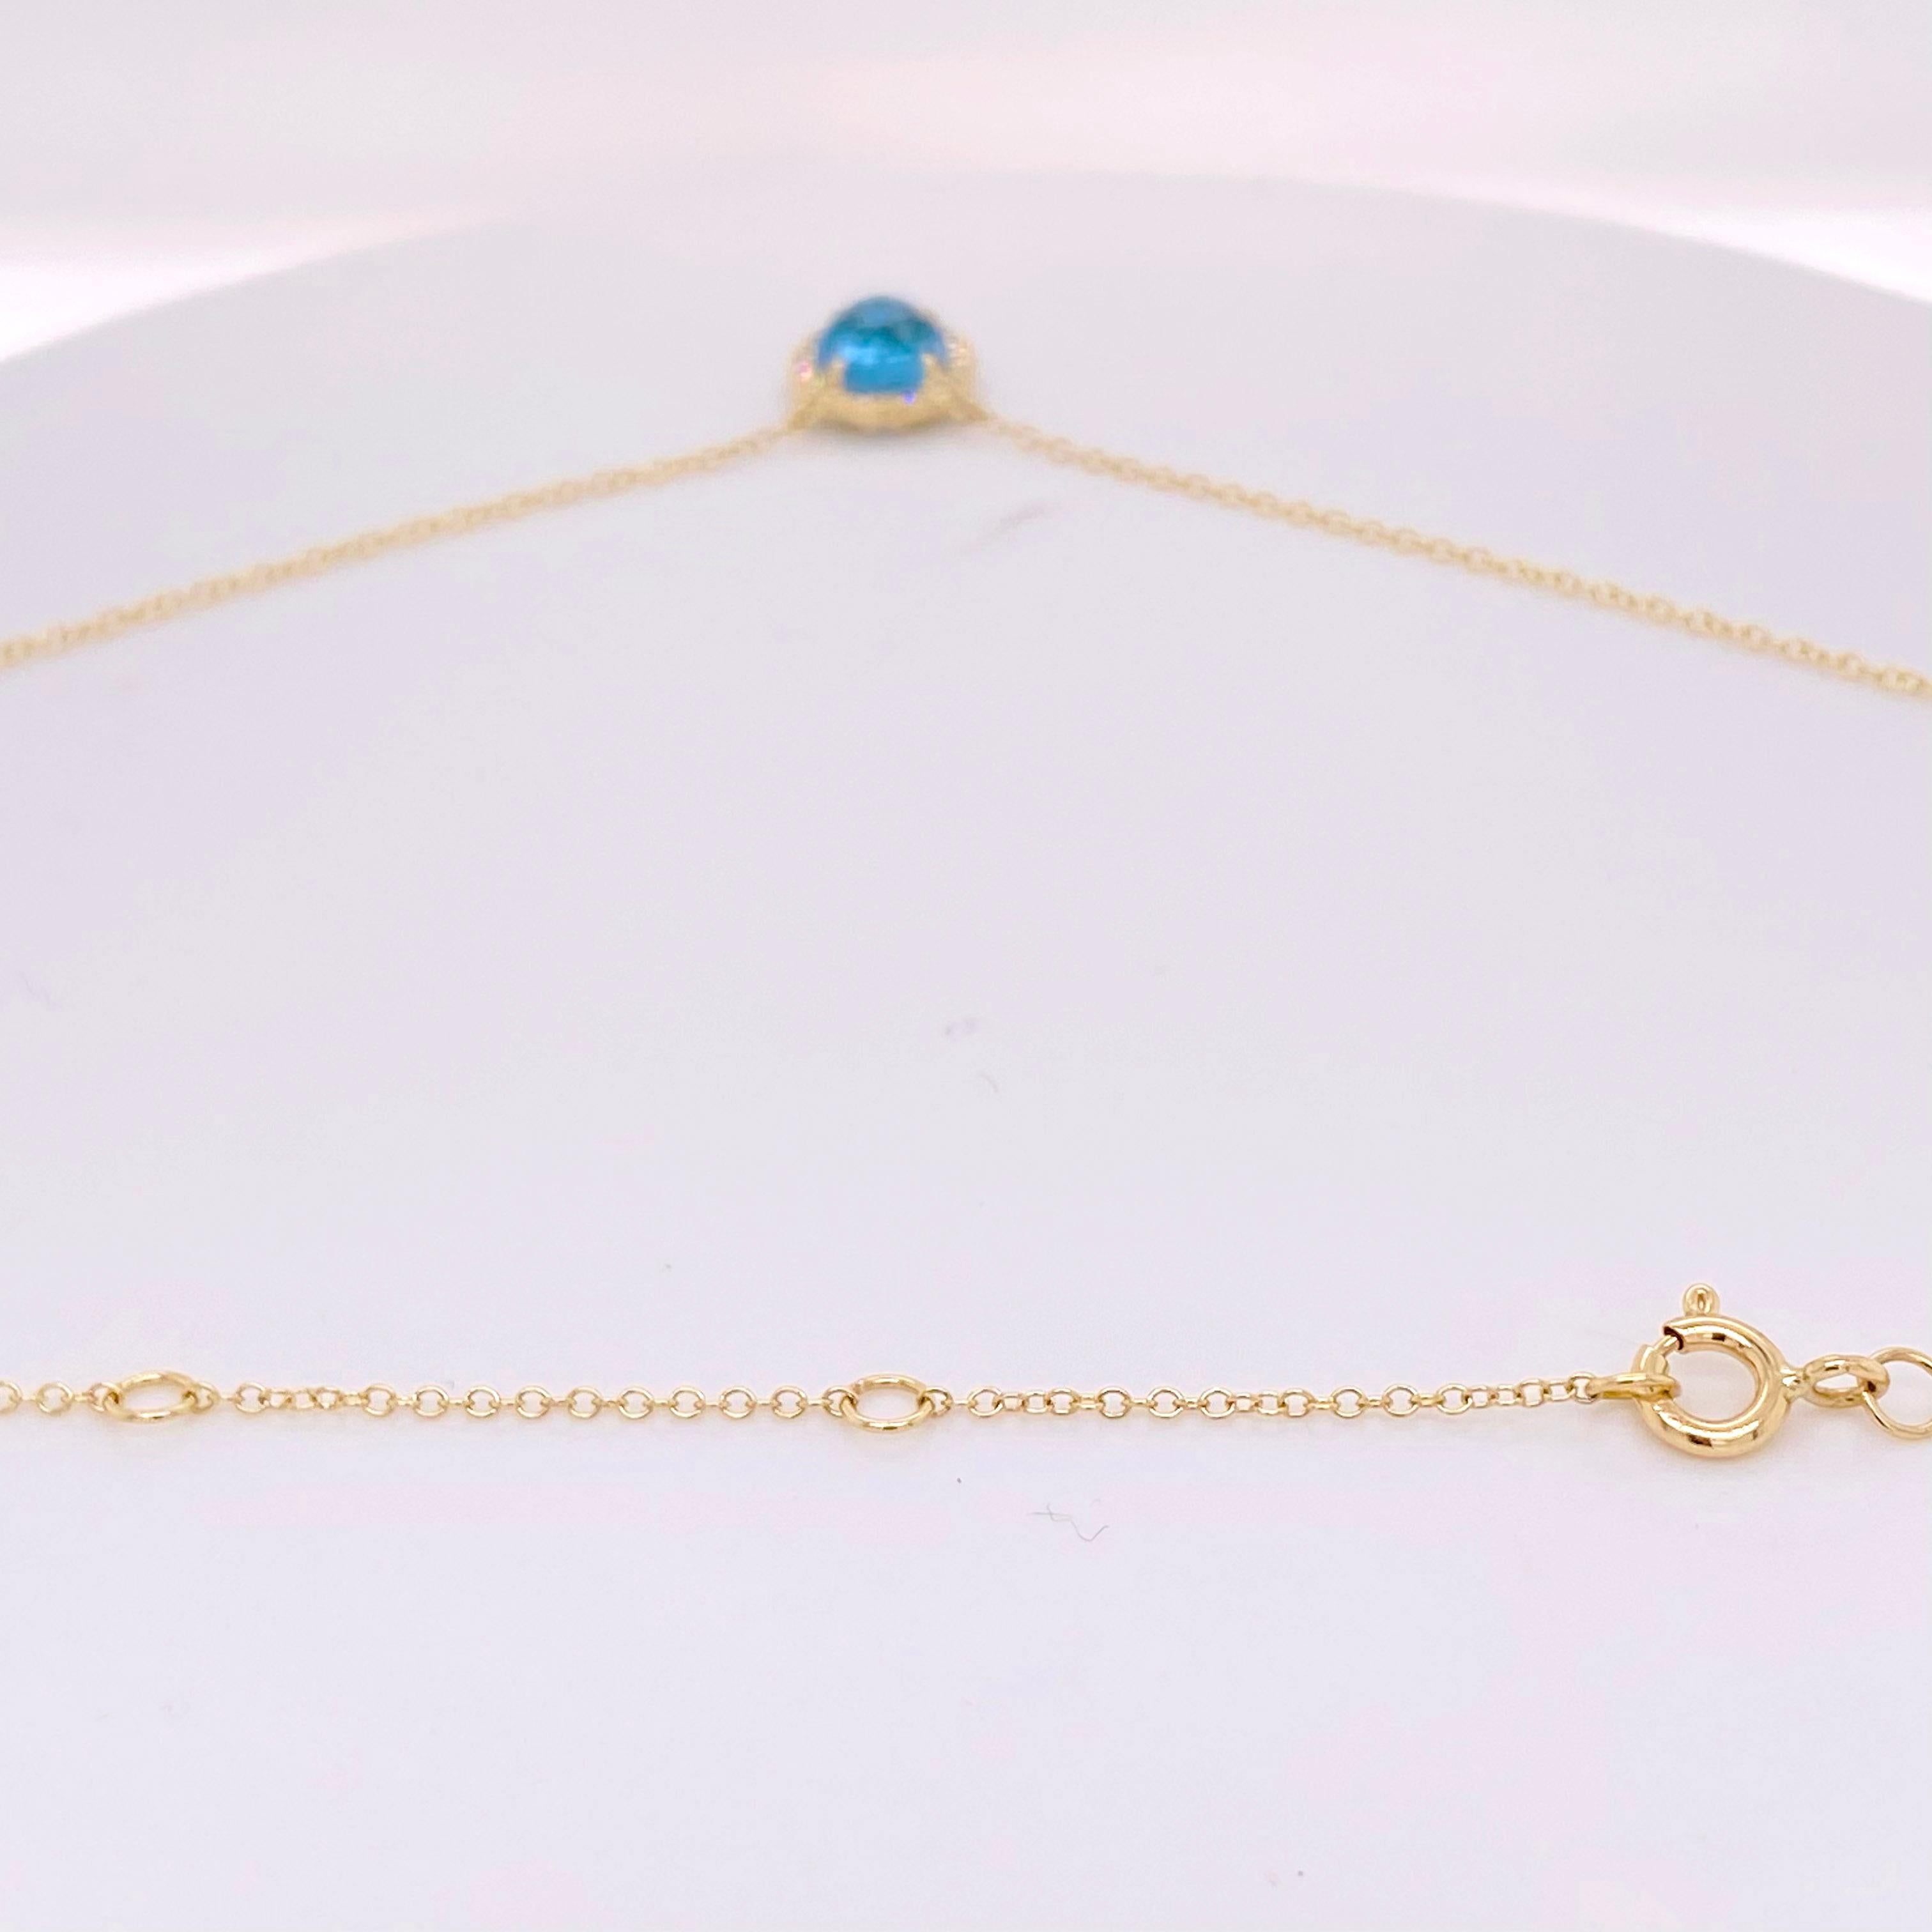 Modern Blue Topaz Diamond Halo Necklace, 1.47 Carats Diamond and Royal Blue Topaz